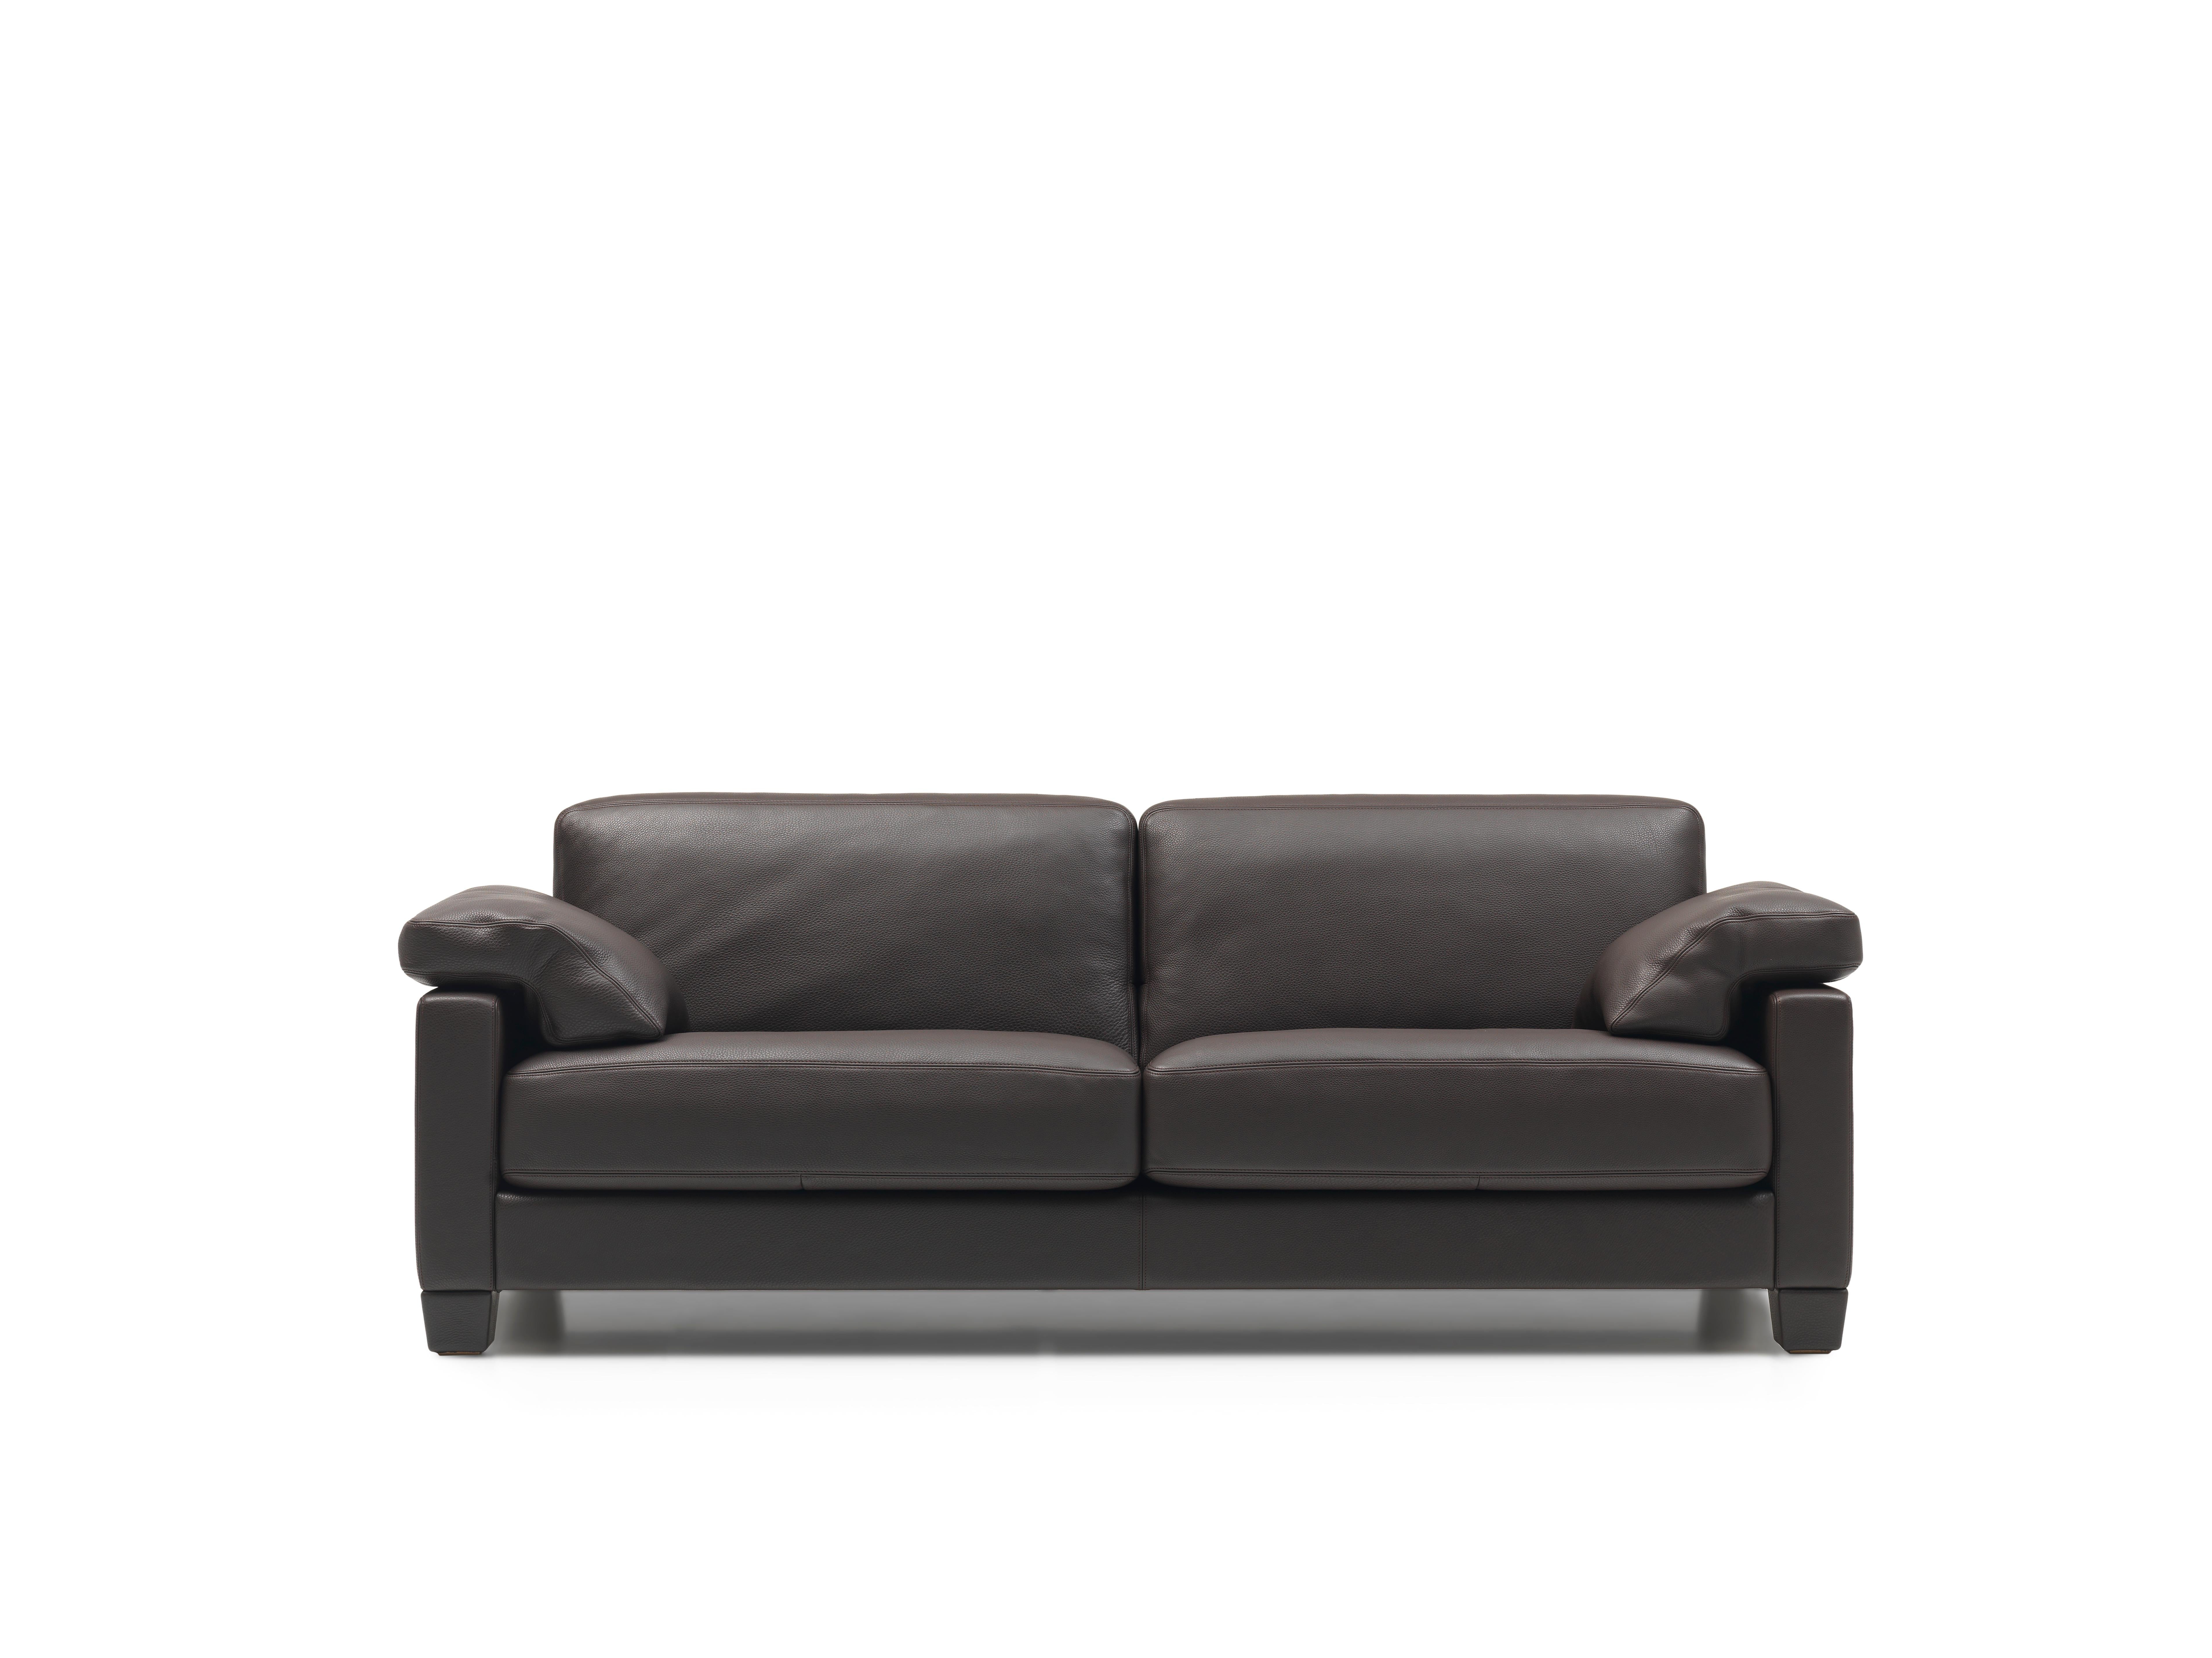 DS-17 sofa von De Sede
Die Kissen sind optional, bitte kontaktieren Sie uns
Abmessungen: T 87 x B 174 x H 78 cm
MATERIALIEN: Gestell aus massiver Buche, Aufhängung mit Gurt; 
Sitz- und Rückenkissen: SEDEX-Polsterung, mit SEDE-Fa-Bezug